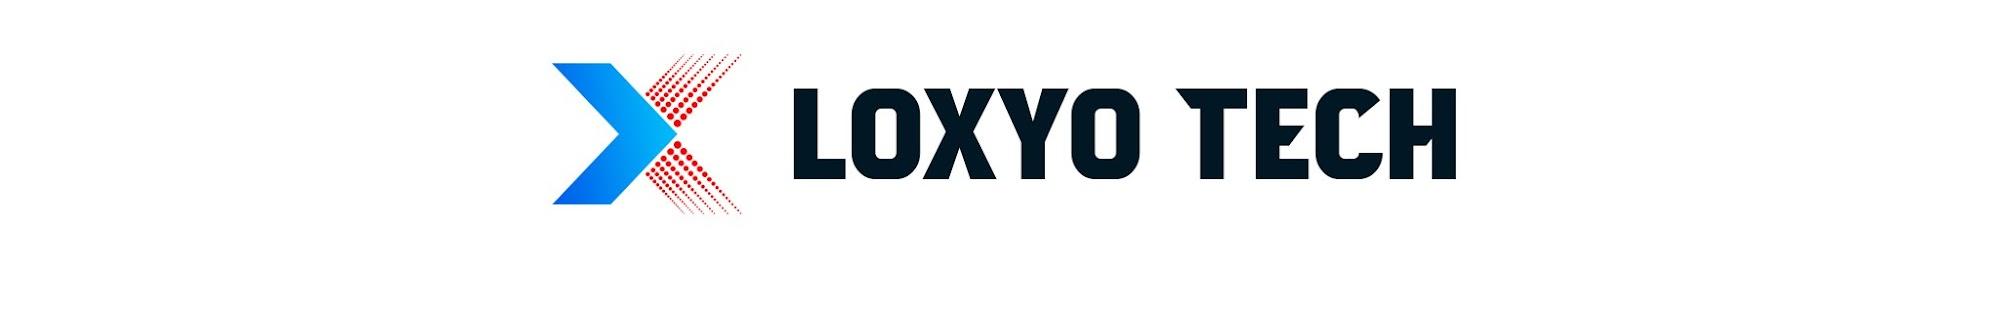 Loxyo Tech